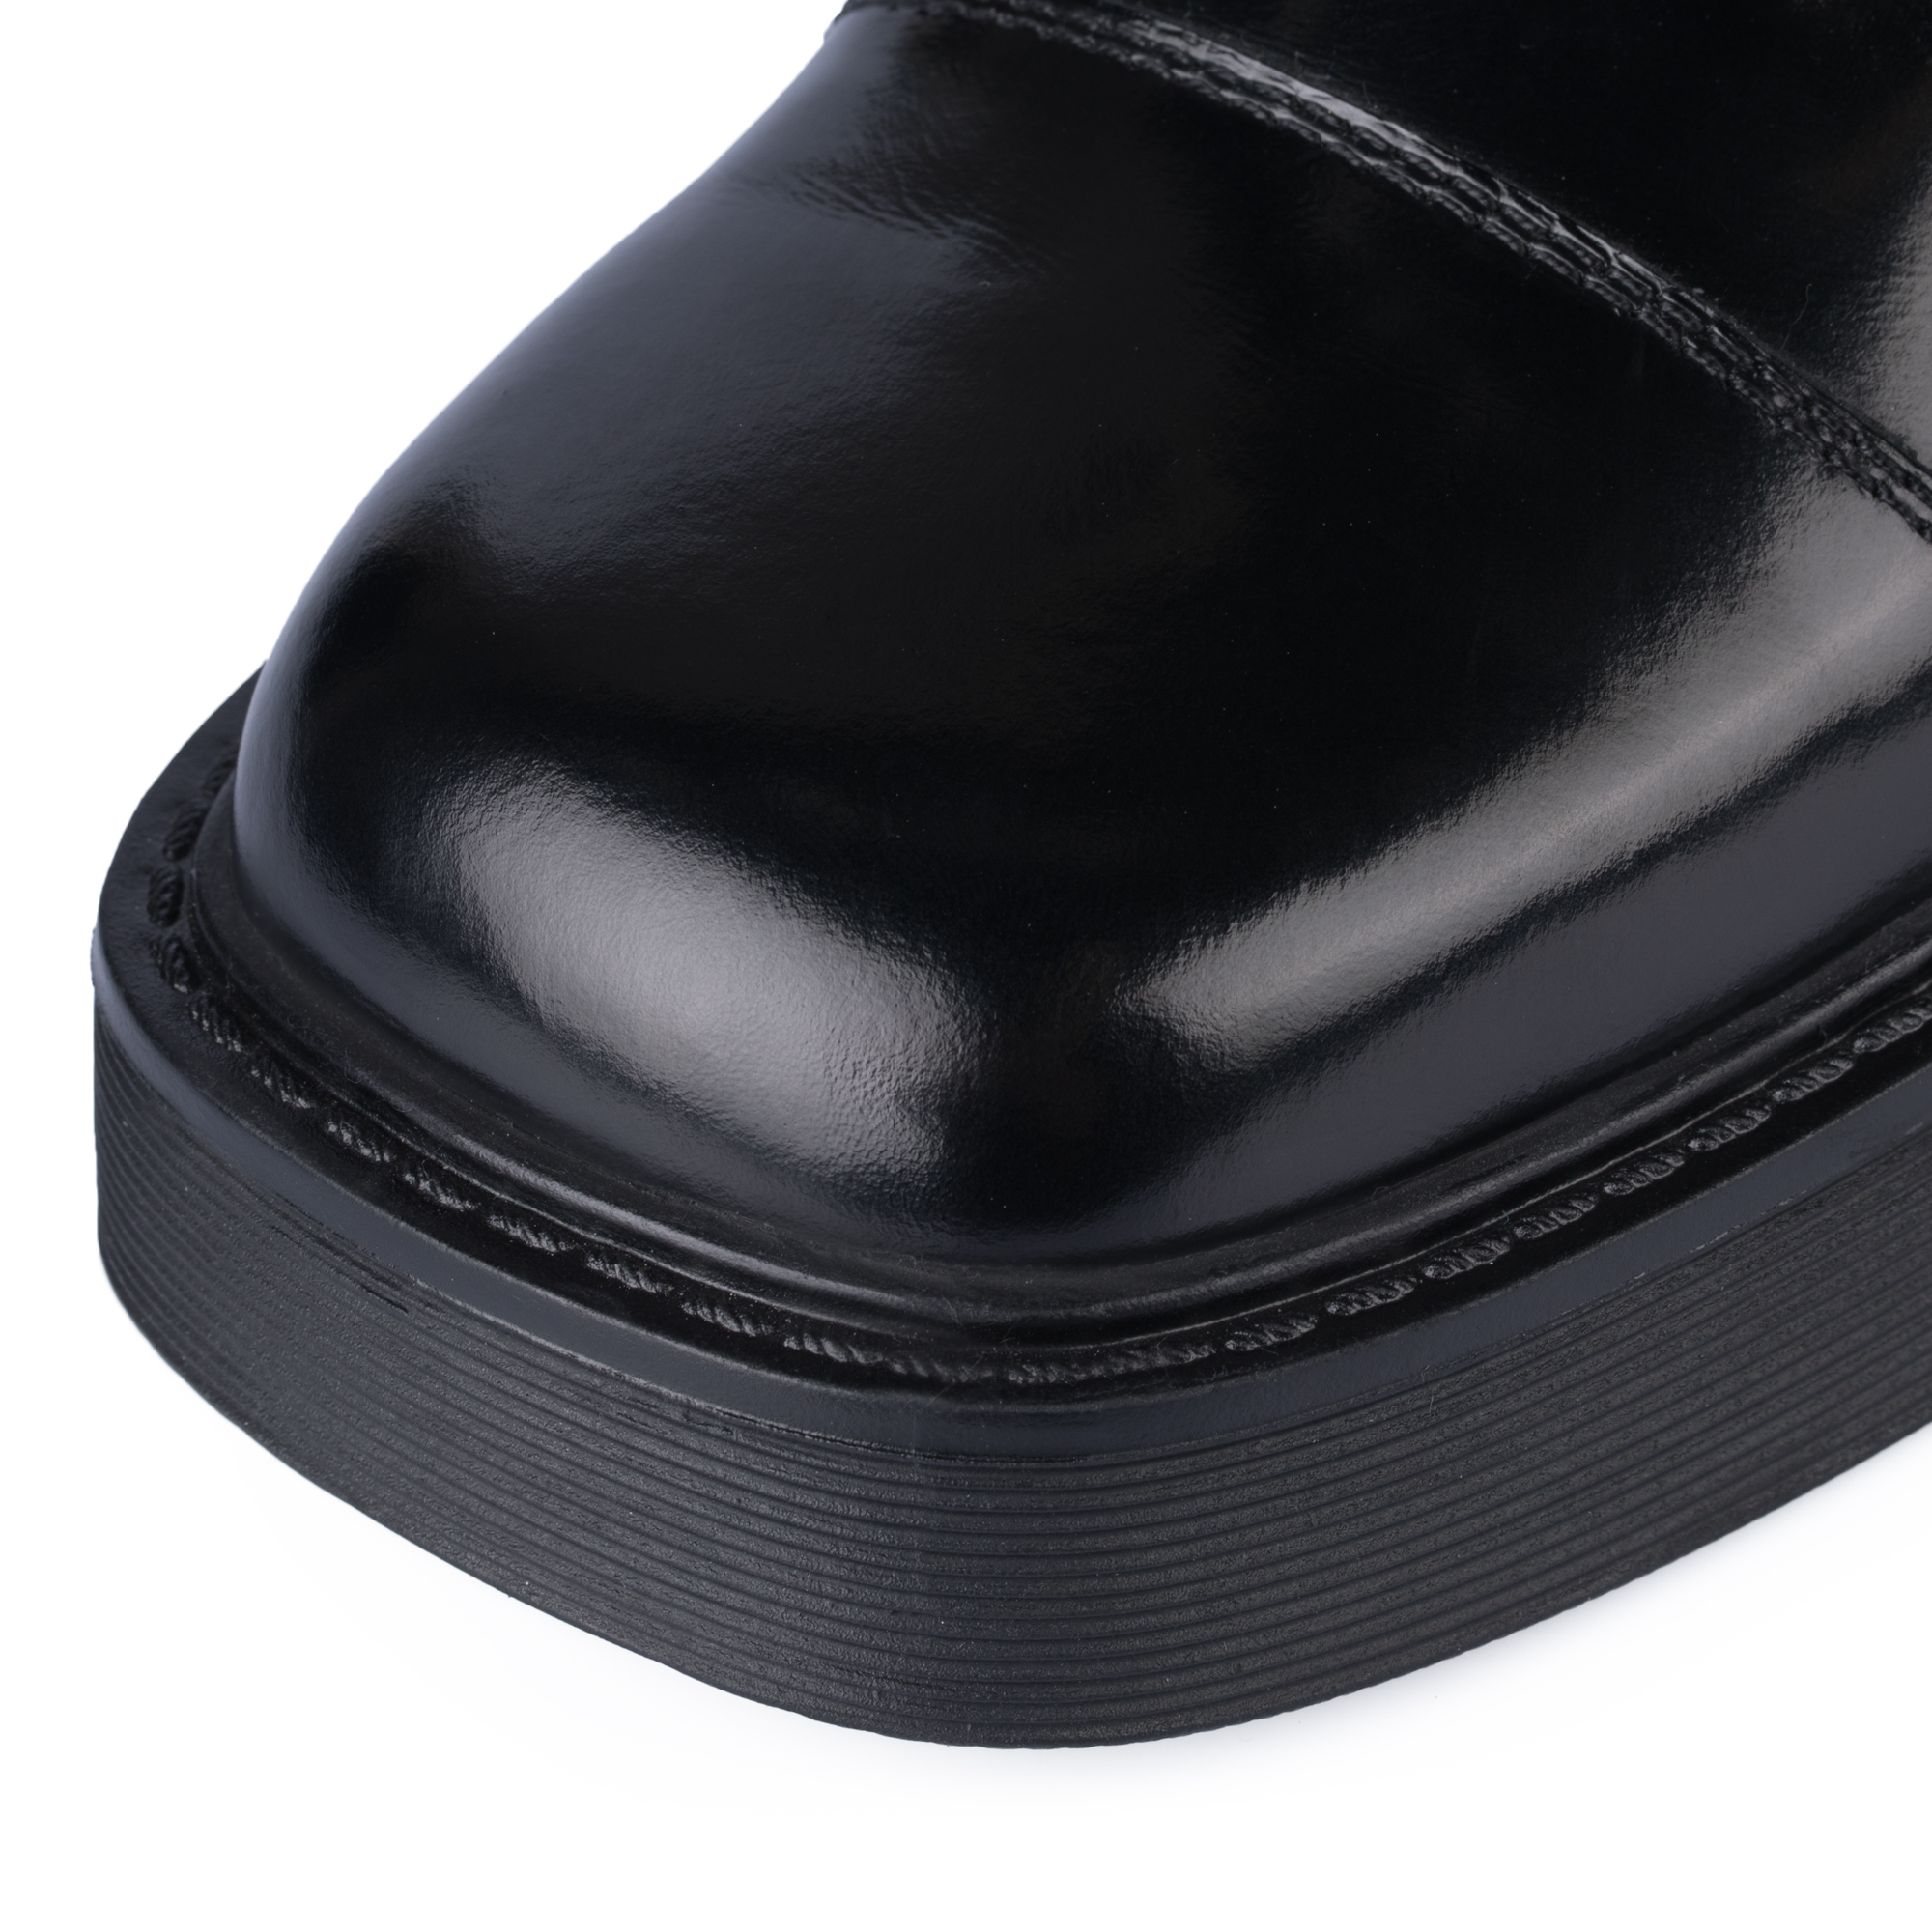 Ботинки Thomas Munz 126-400A-2102, цвет черный, размер 40 - фото 6